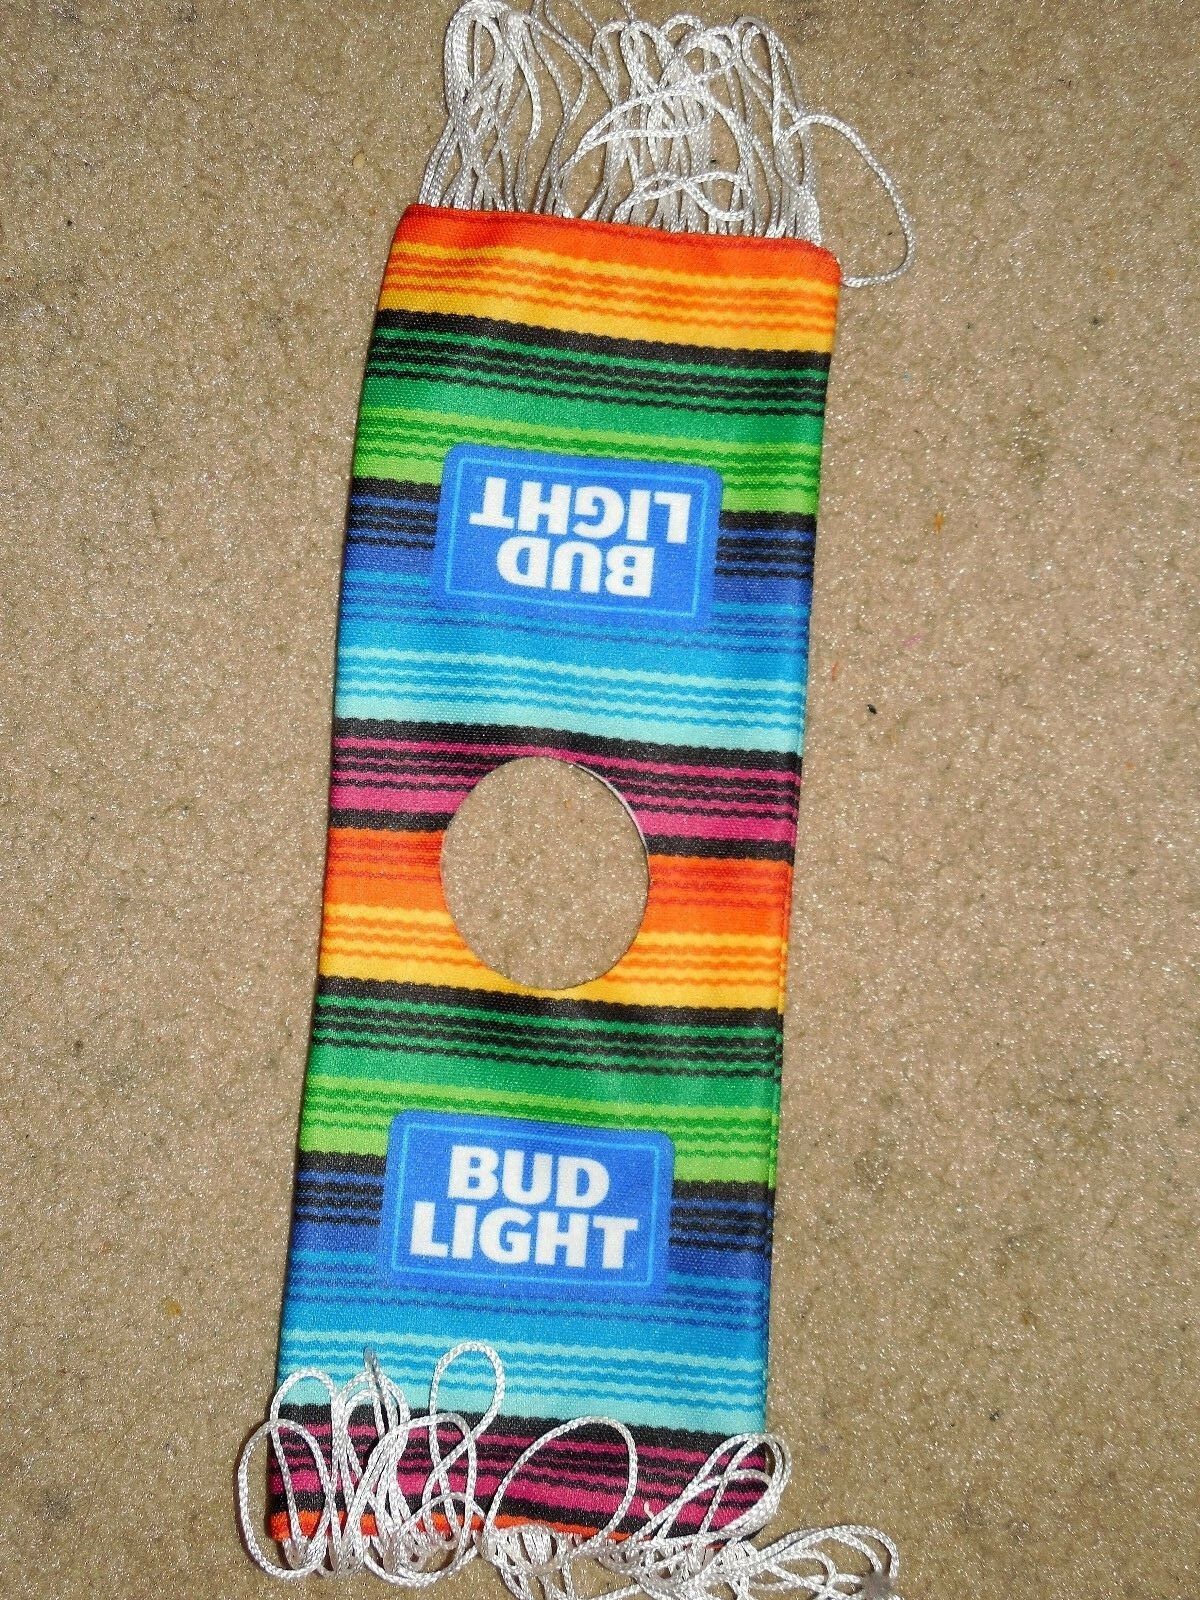 Bud Light Baja Mexico Spanish Beer Bottle Cover